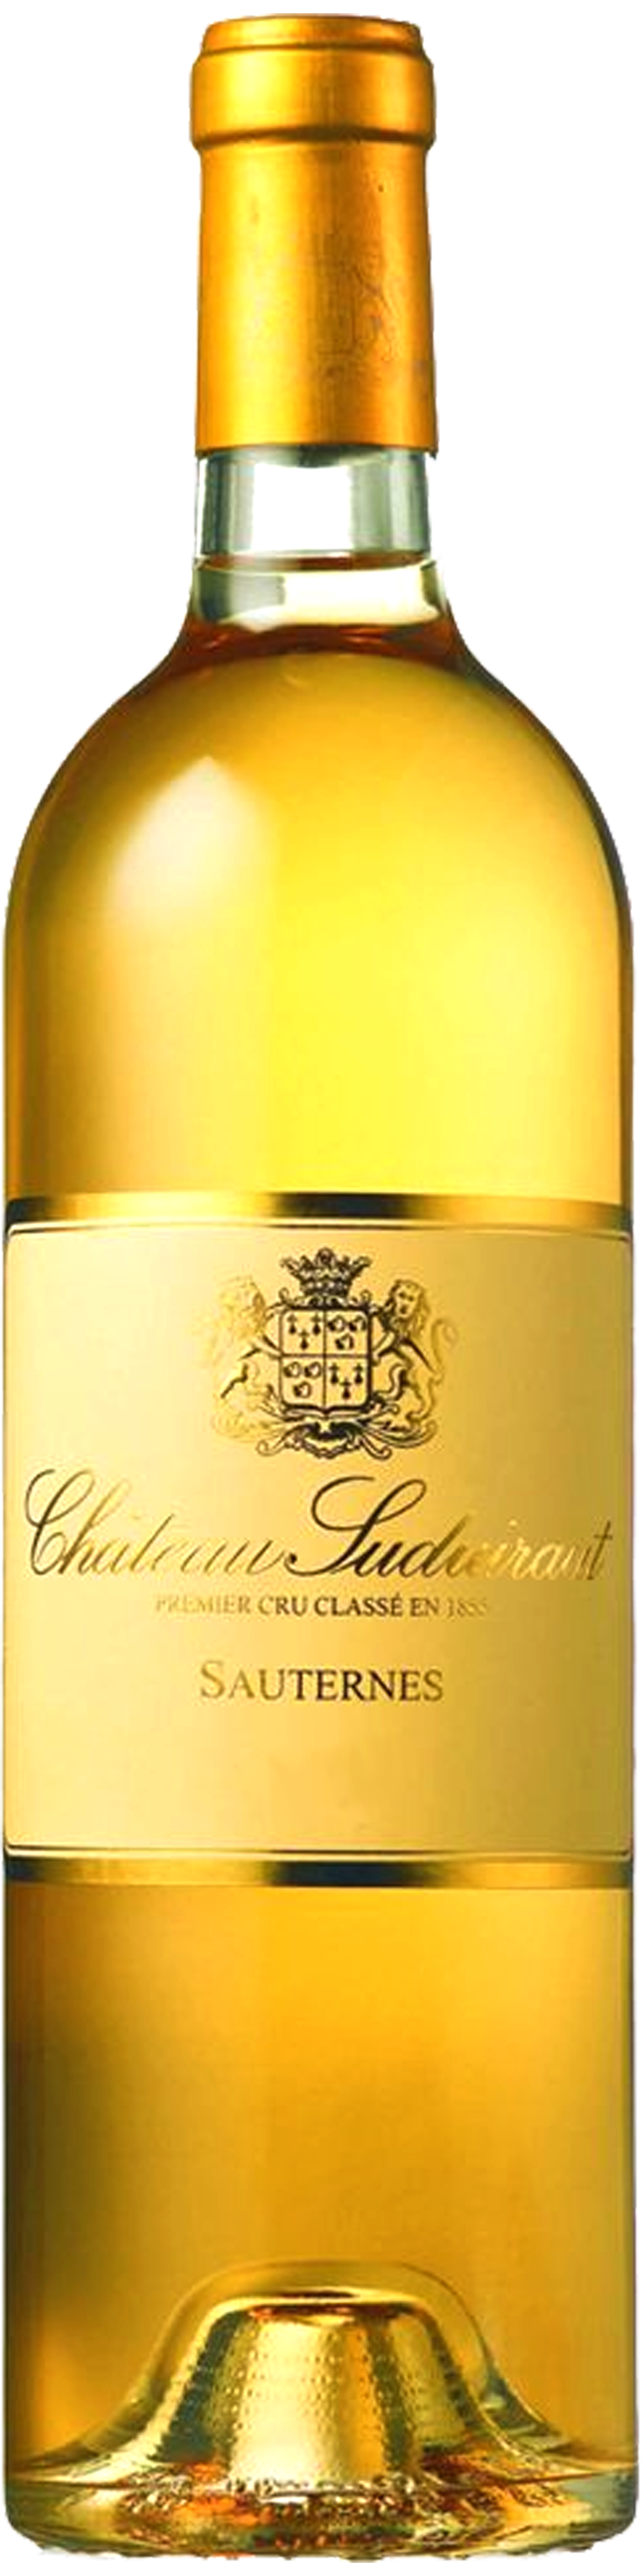 Bottle shot of 2008 Château Suduiraut, 1er Cru Sauternes